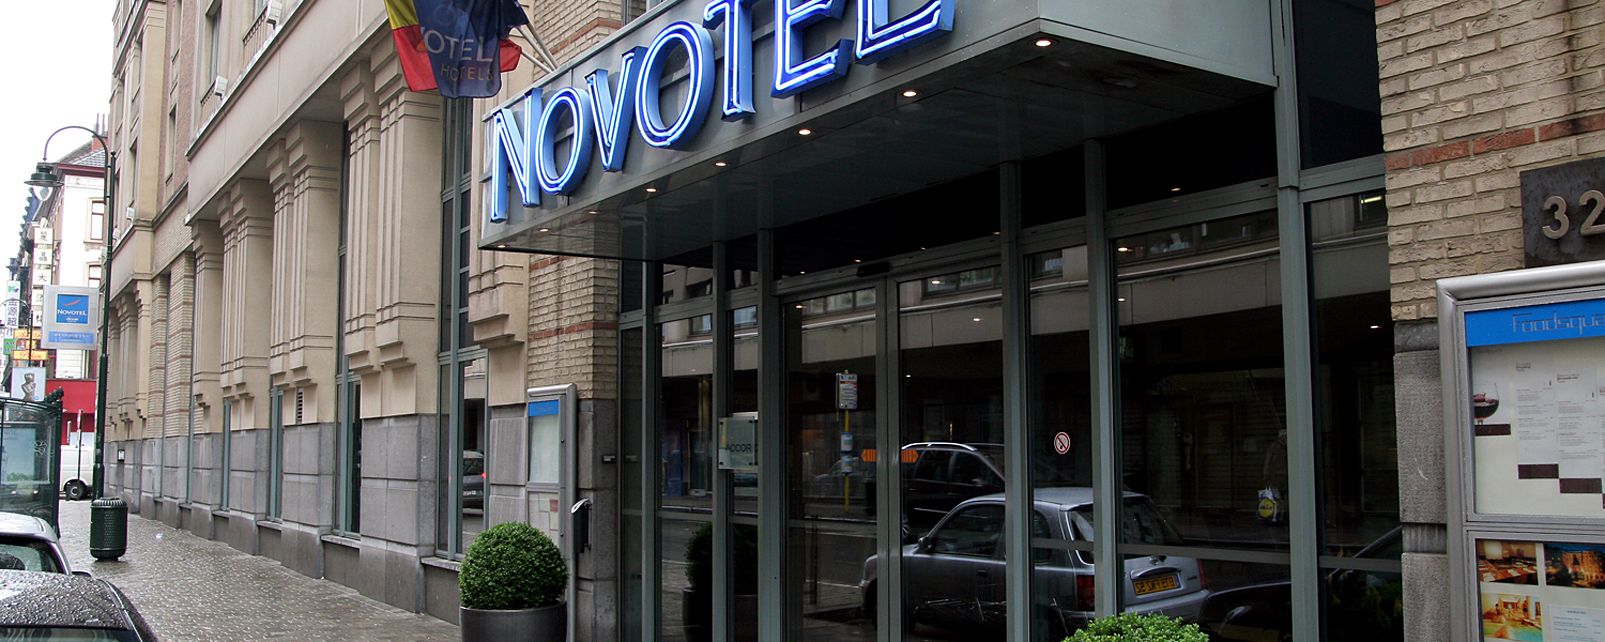 Hôtel Novotel Centre Tour Noire